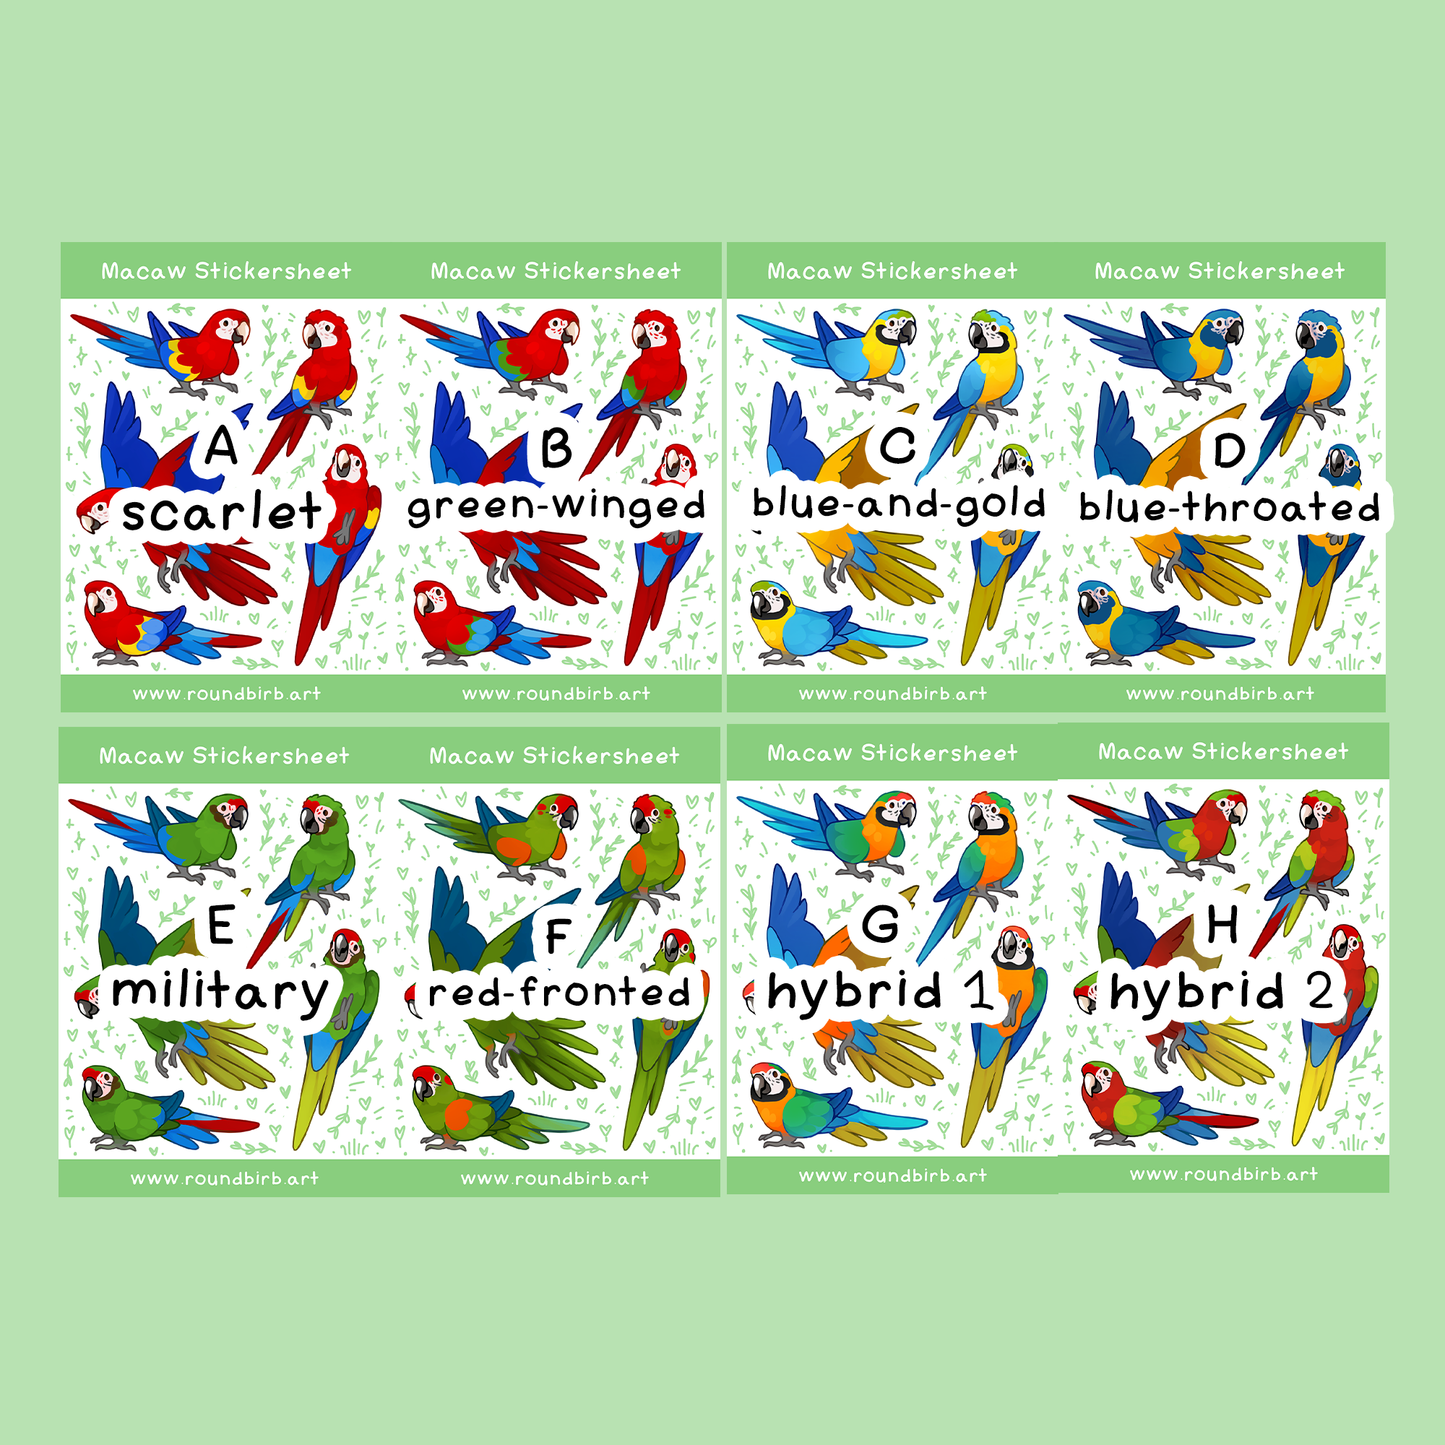 Macaw Stickersheet